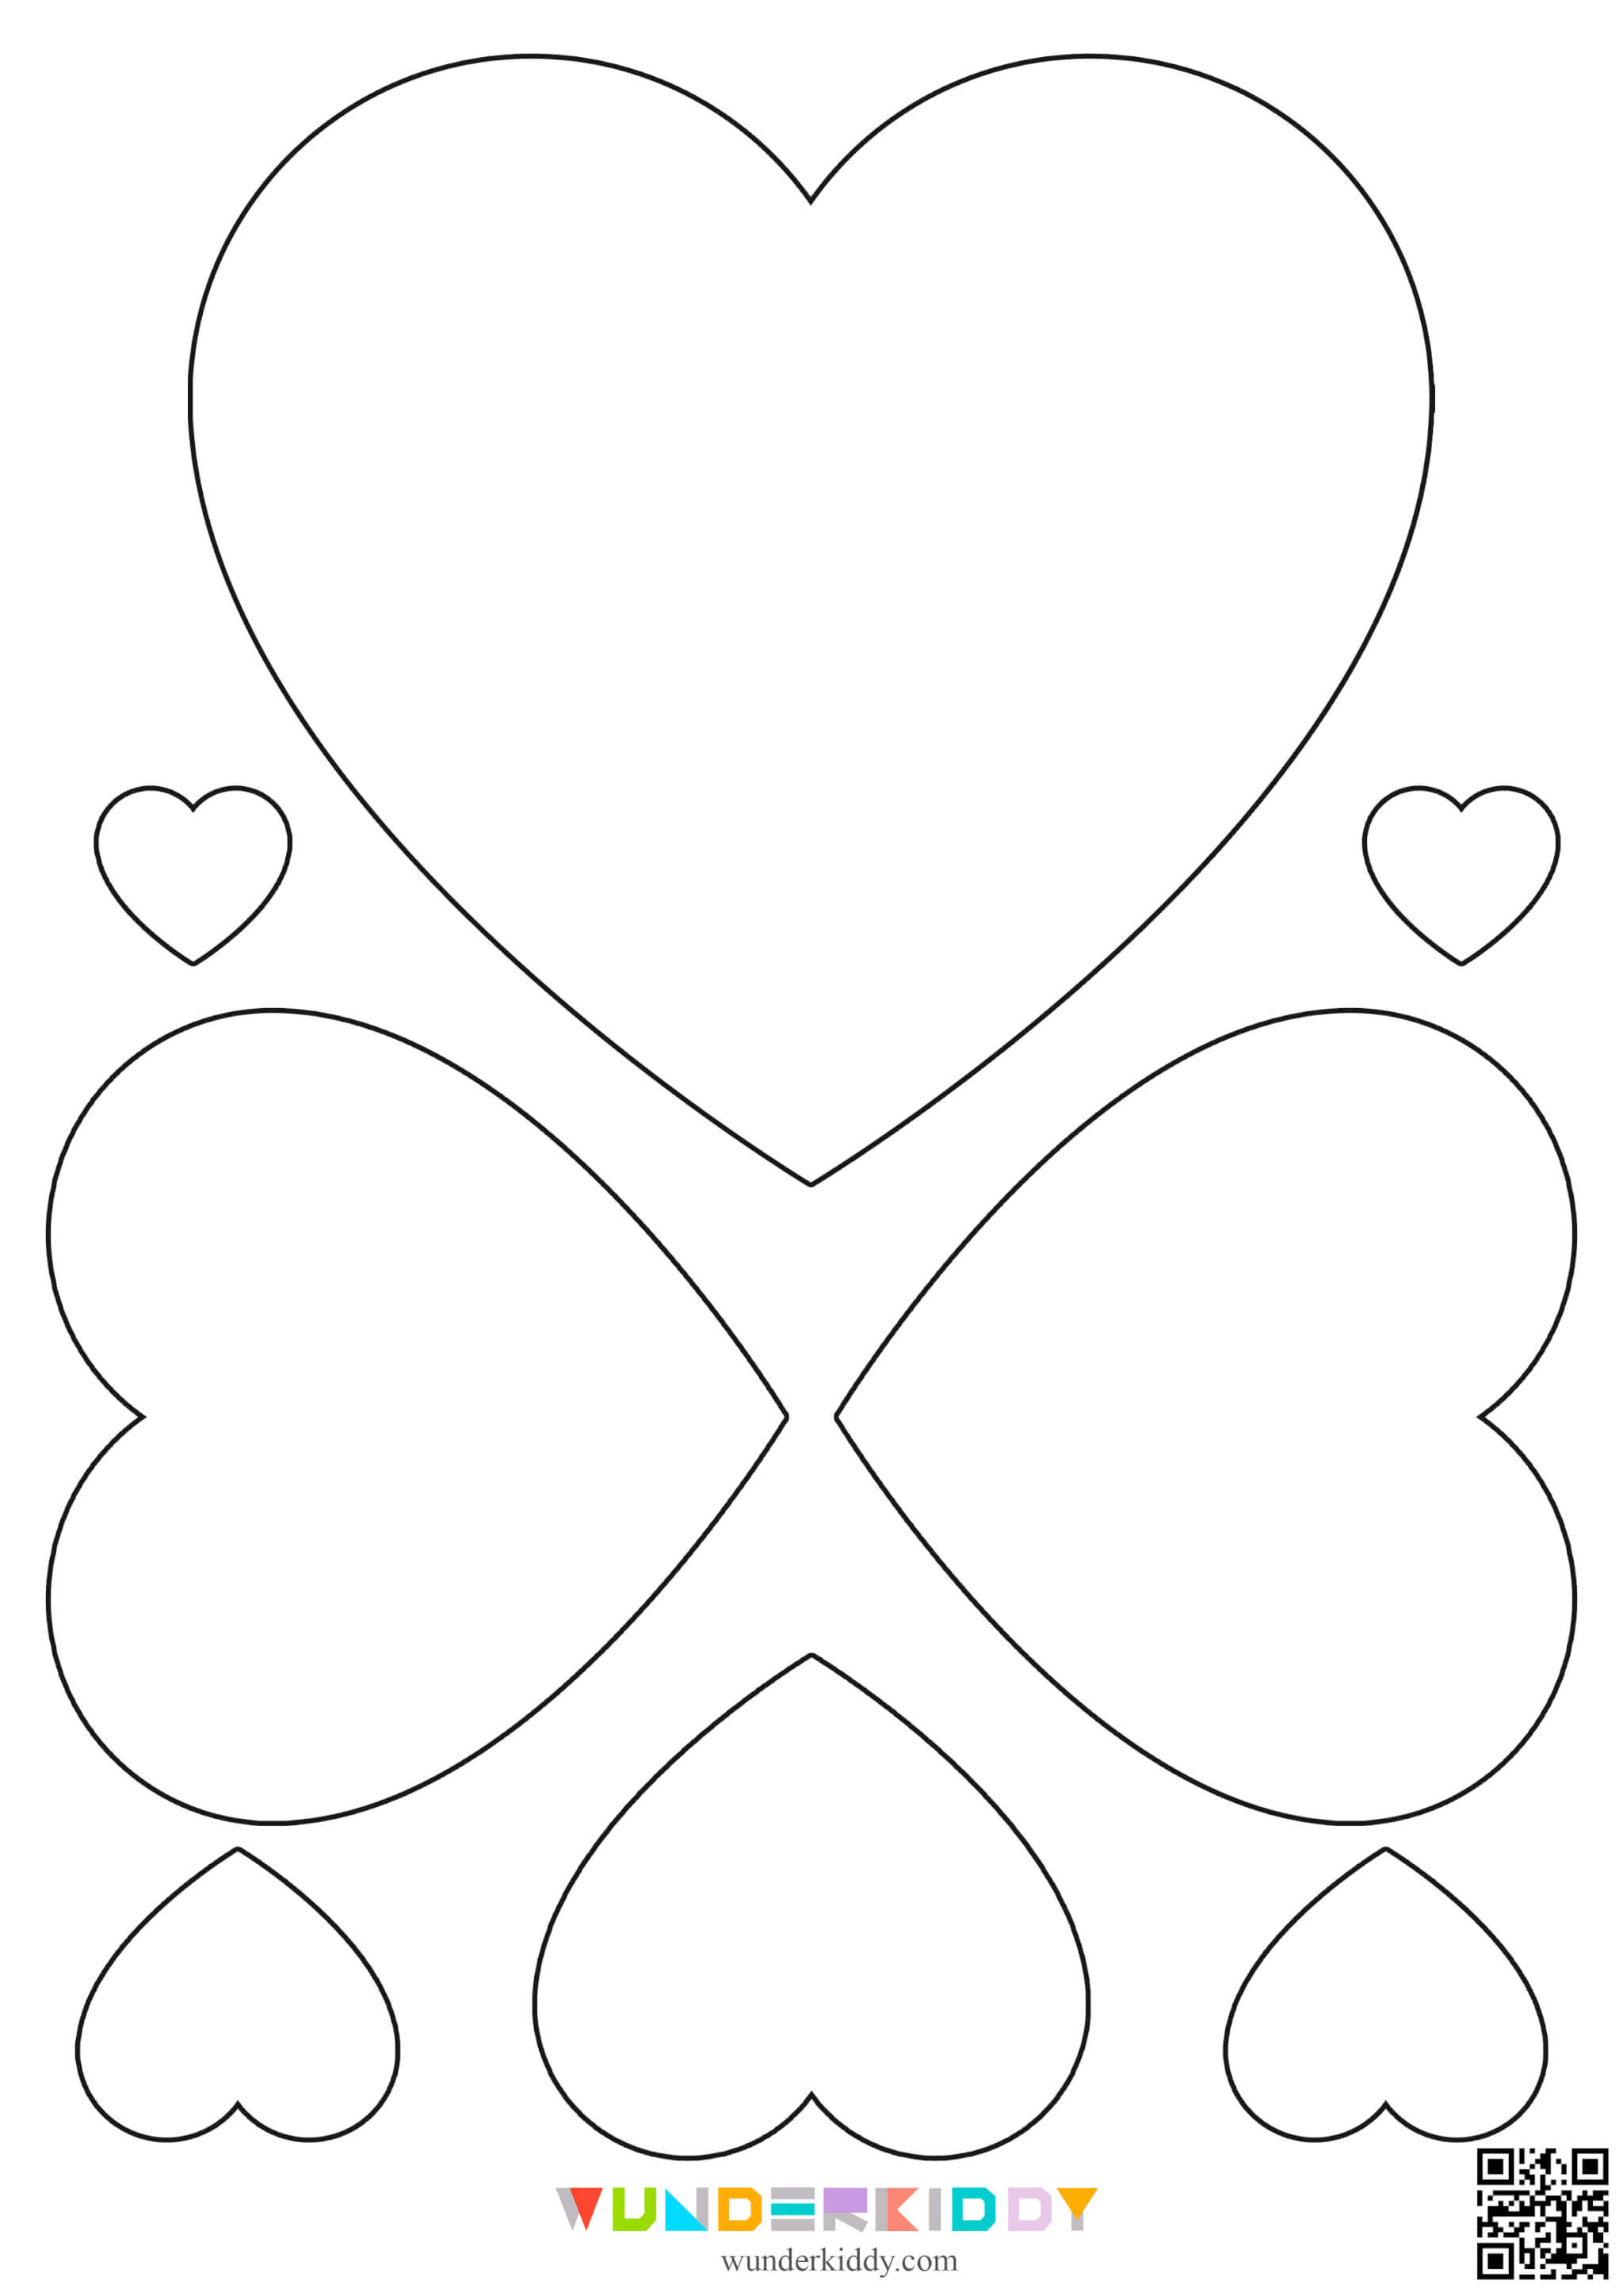 Контури та шаблони «Сердечка» для вирізання - Зображення 10